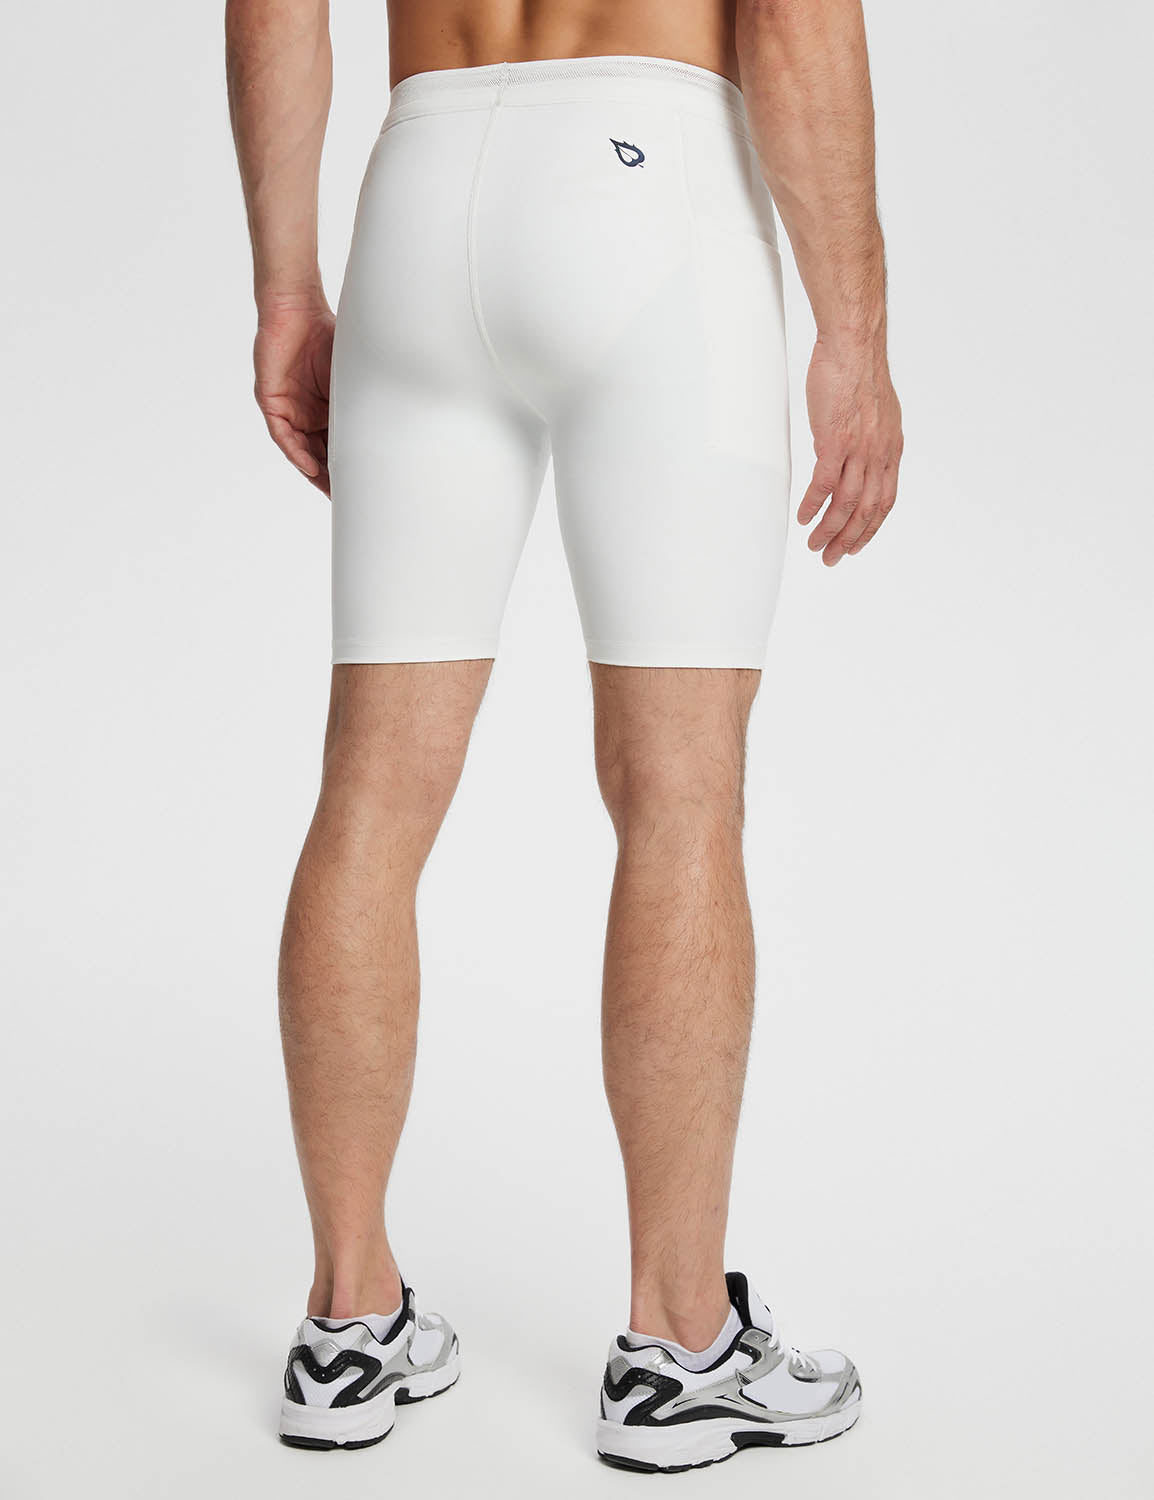 Baleaf Men's Lycra 2-in-1 Compresion Shorts (Website Exclusive) dbd060 Lucent White Back